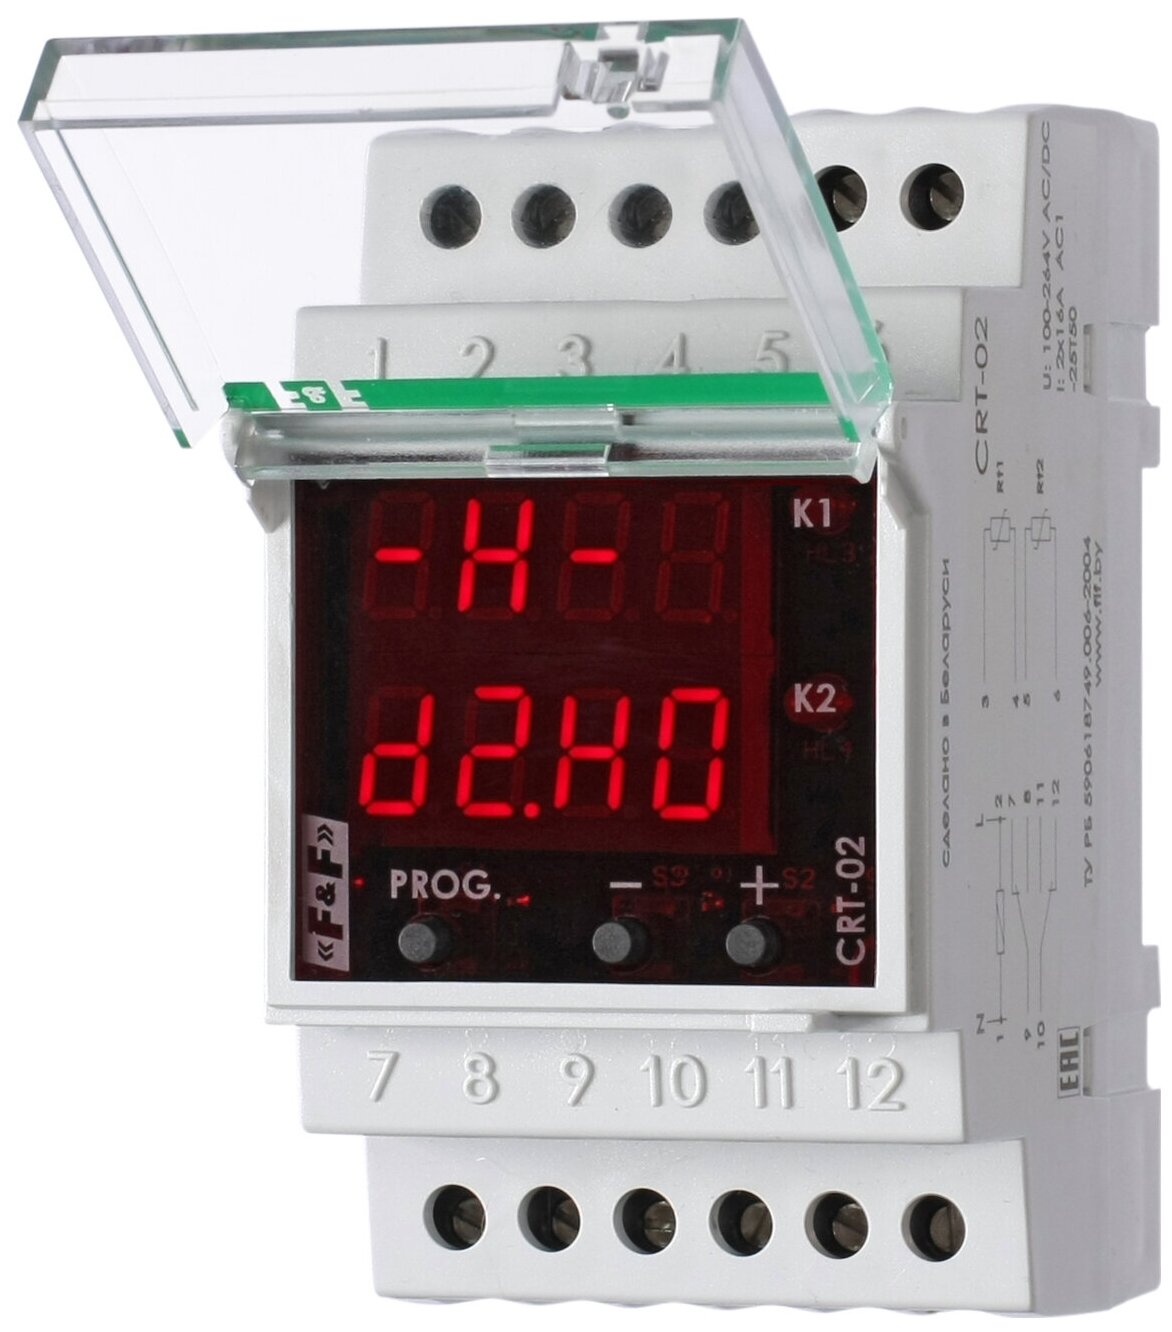 Регулятор температуры F&f , CRT-02 напряжение питания 100-264 В AC/DC диапазон от -50 до +150 гр., Гистерезис 0,5-25°С, Контакт 2NO/NC, максимальный ток 16 А., EA07.001.015